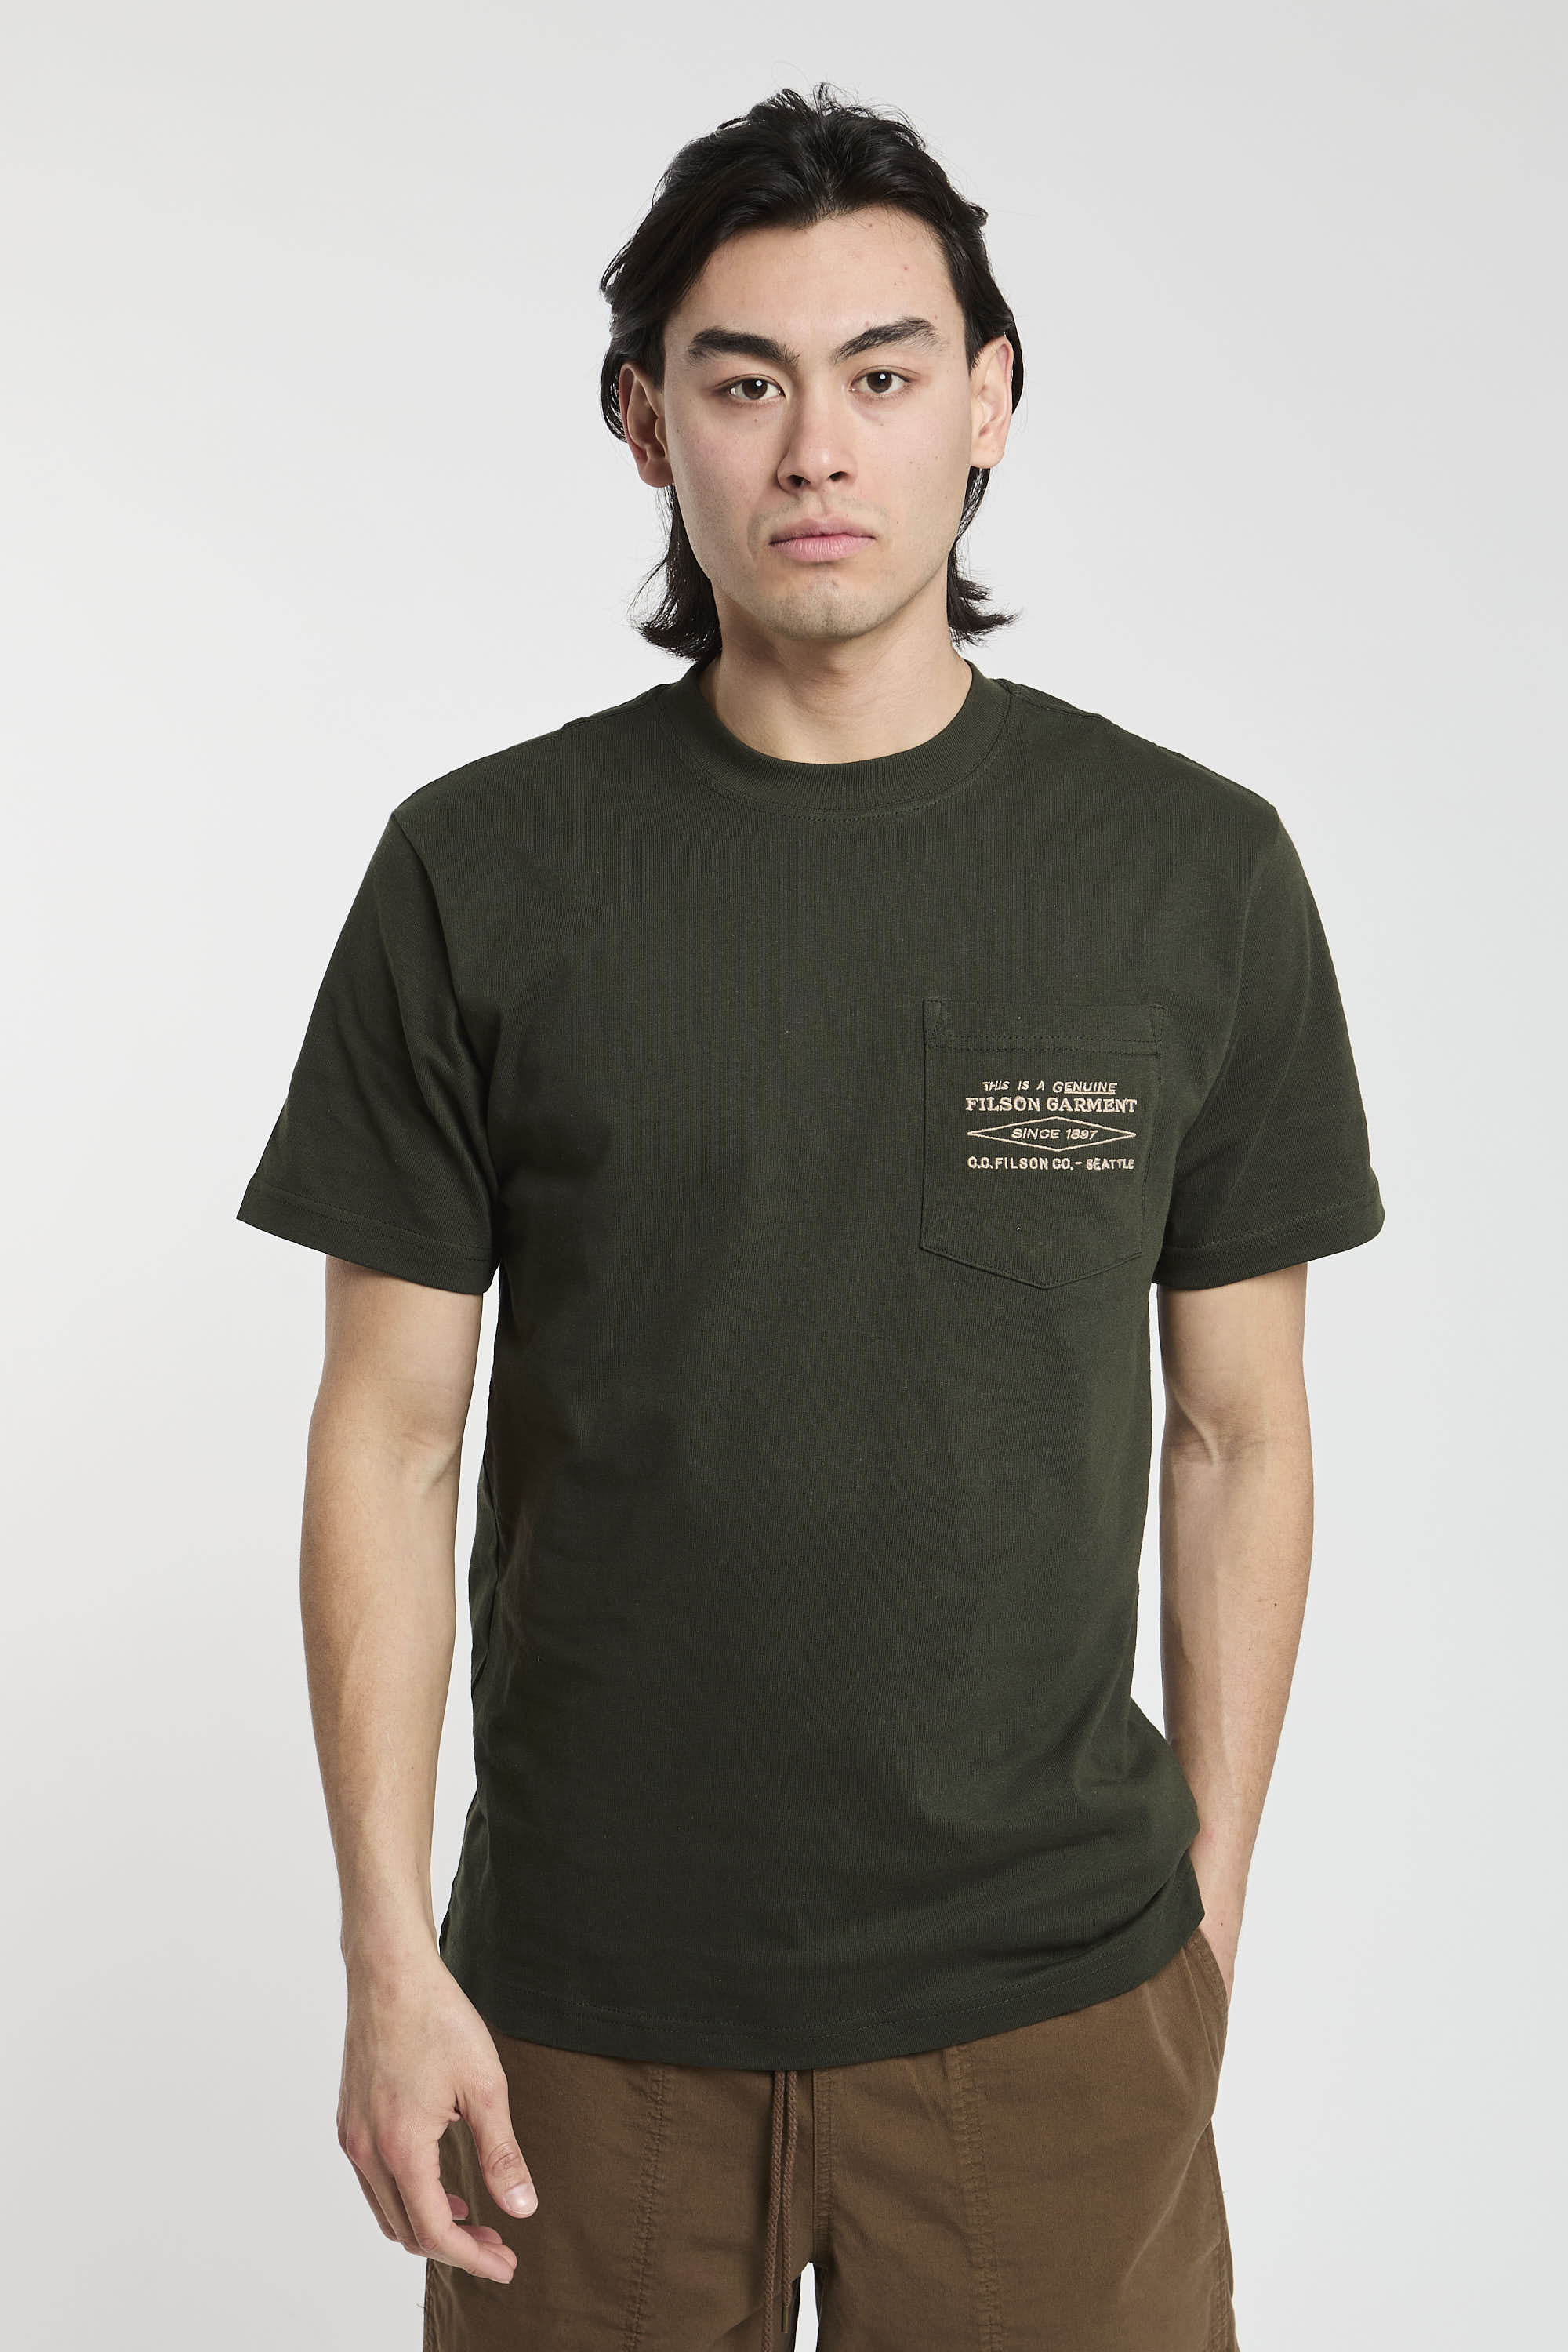 Filson T-Shirt Jersey Grün aus Baumwolle-1